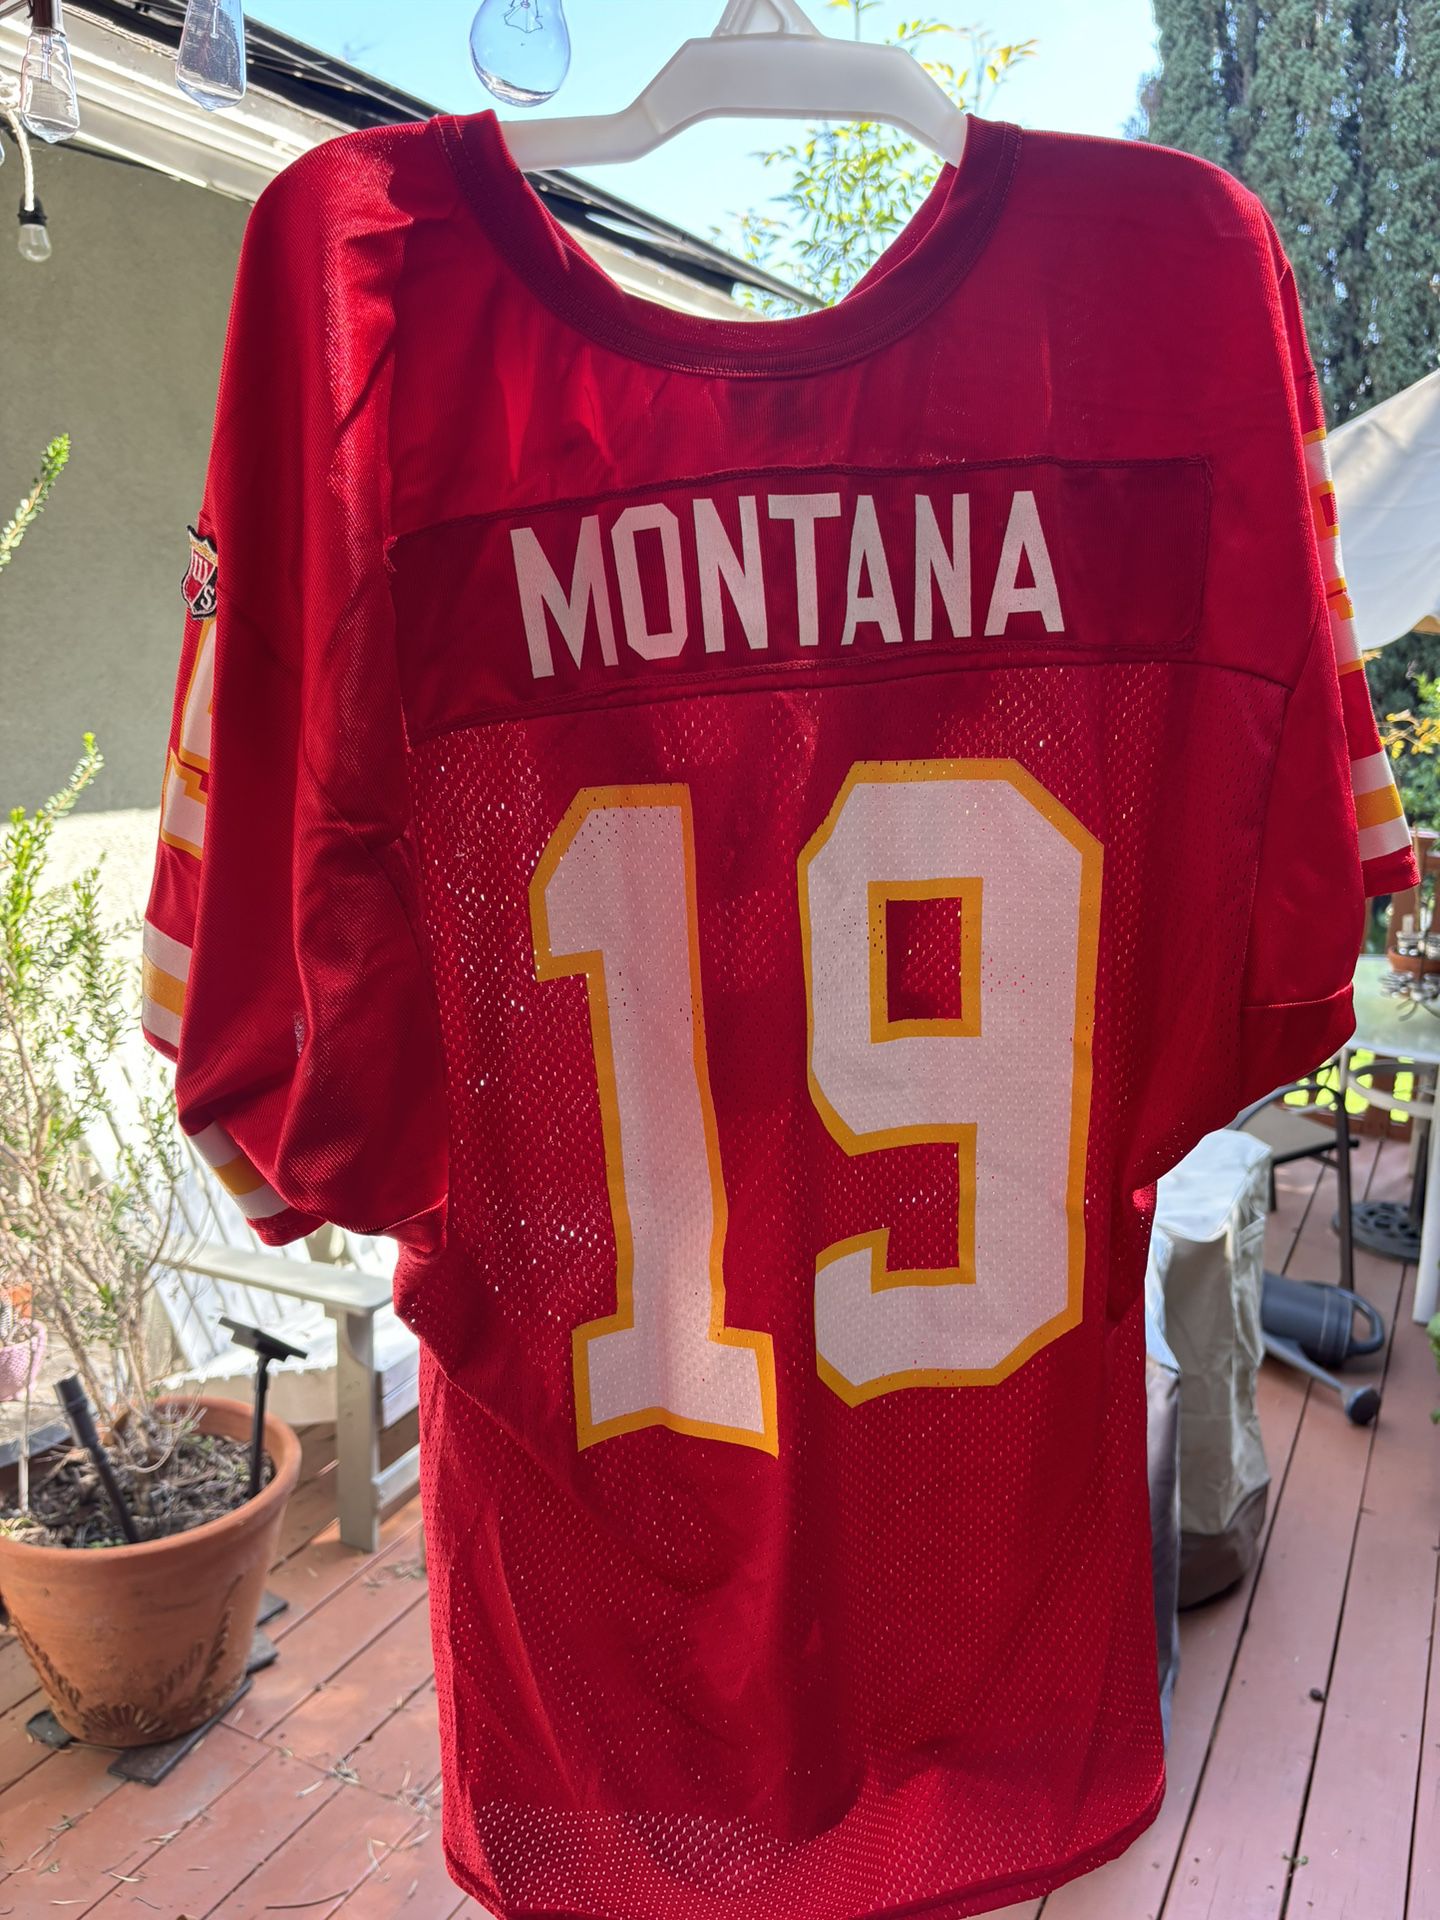 Joe Montana #19 Kansas City Chiefs 